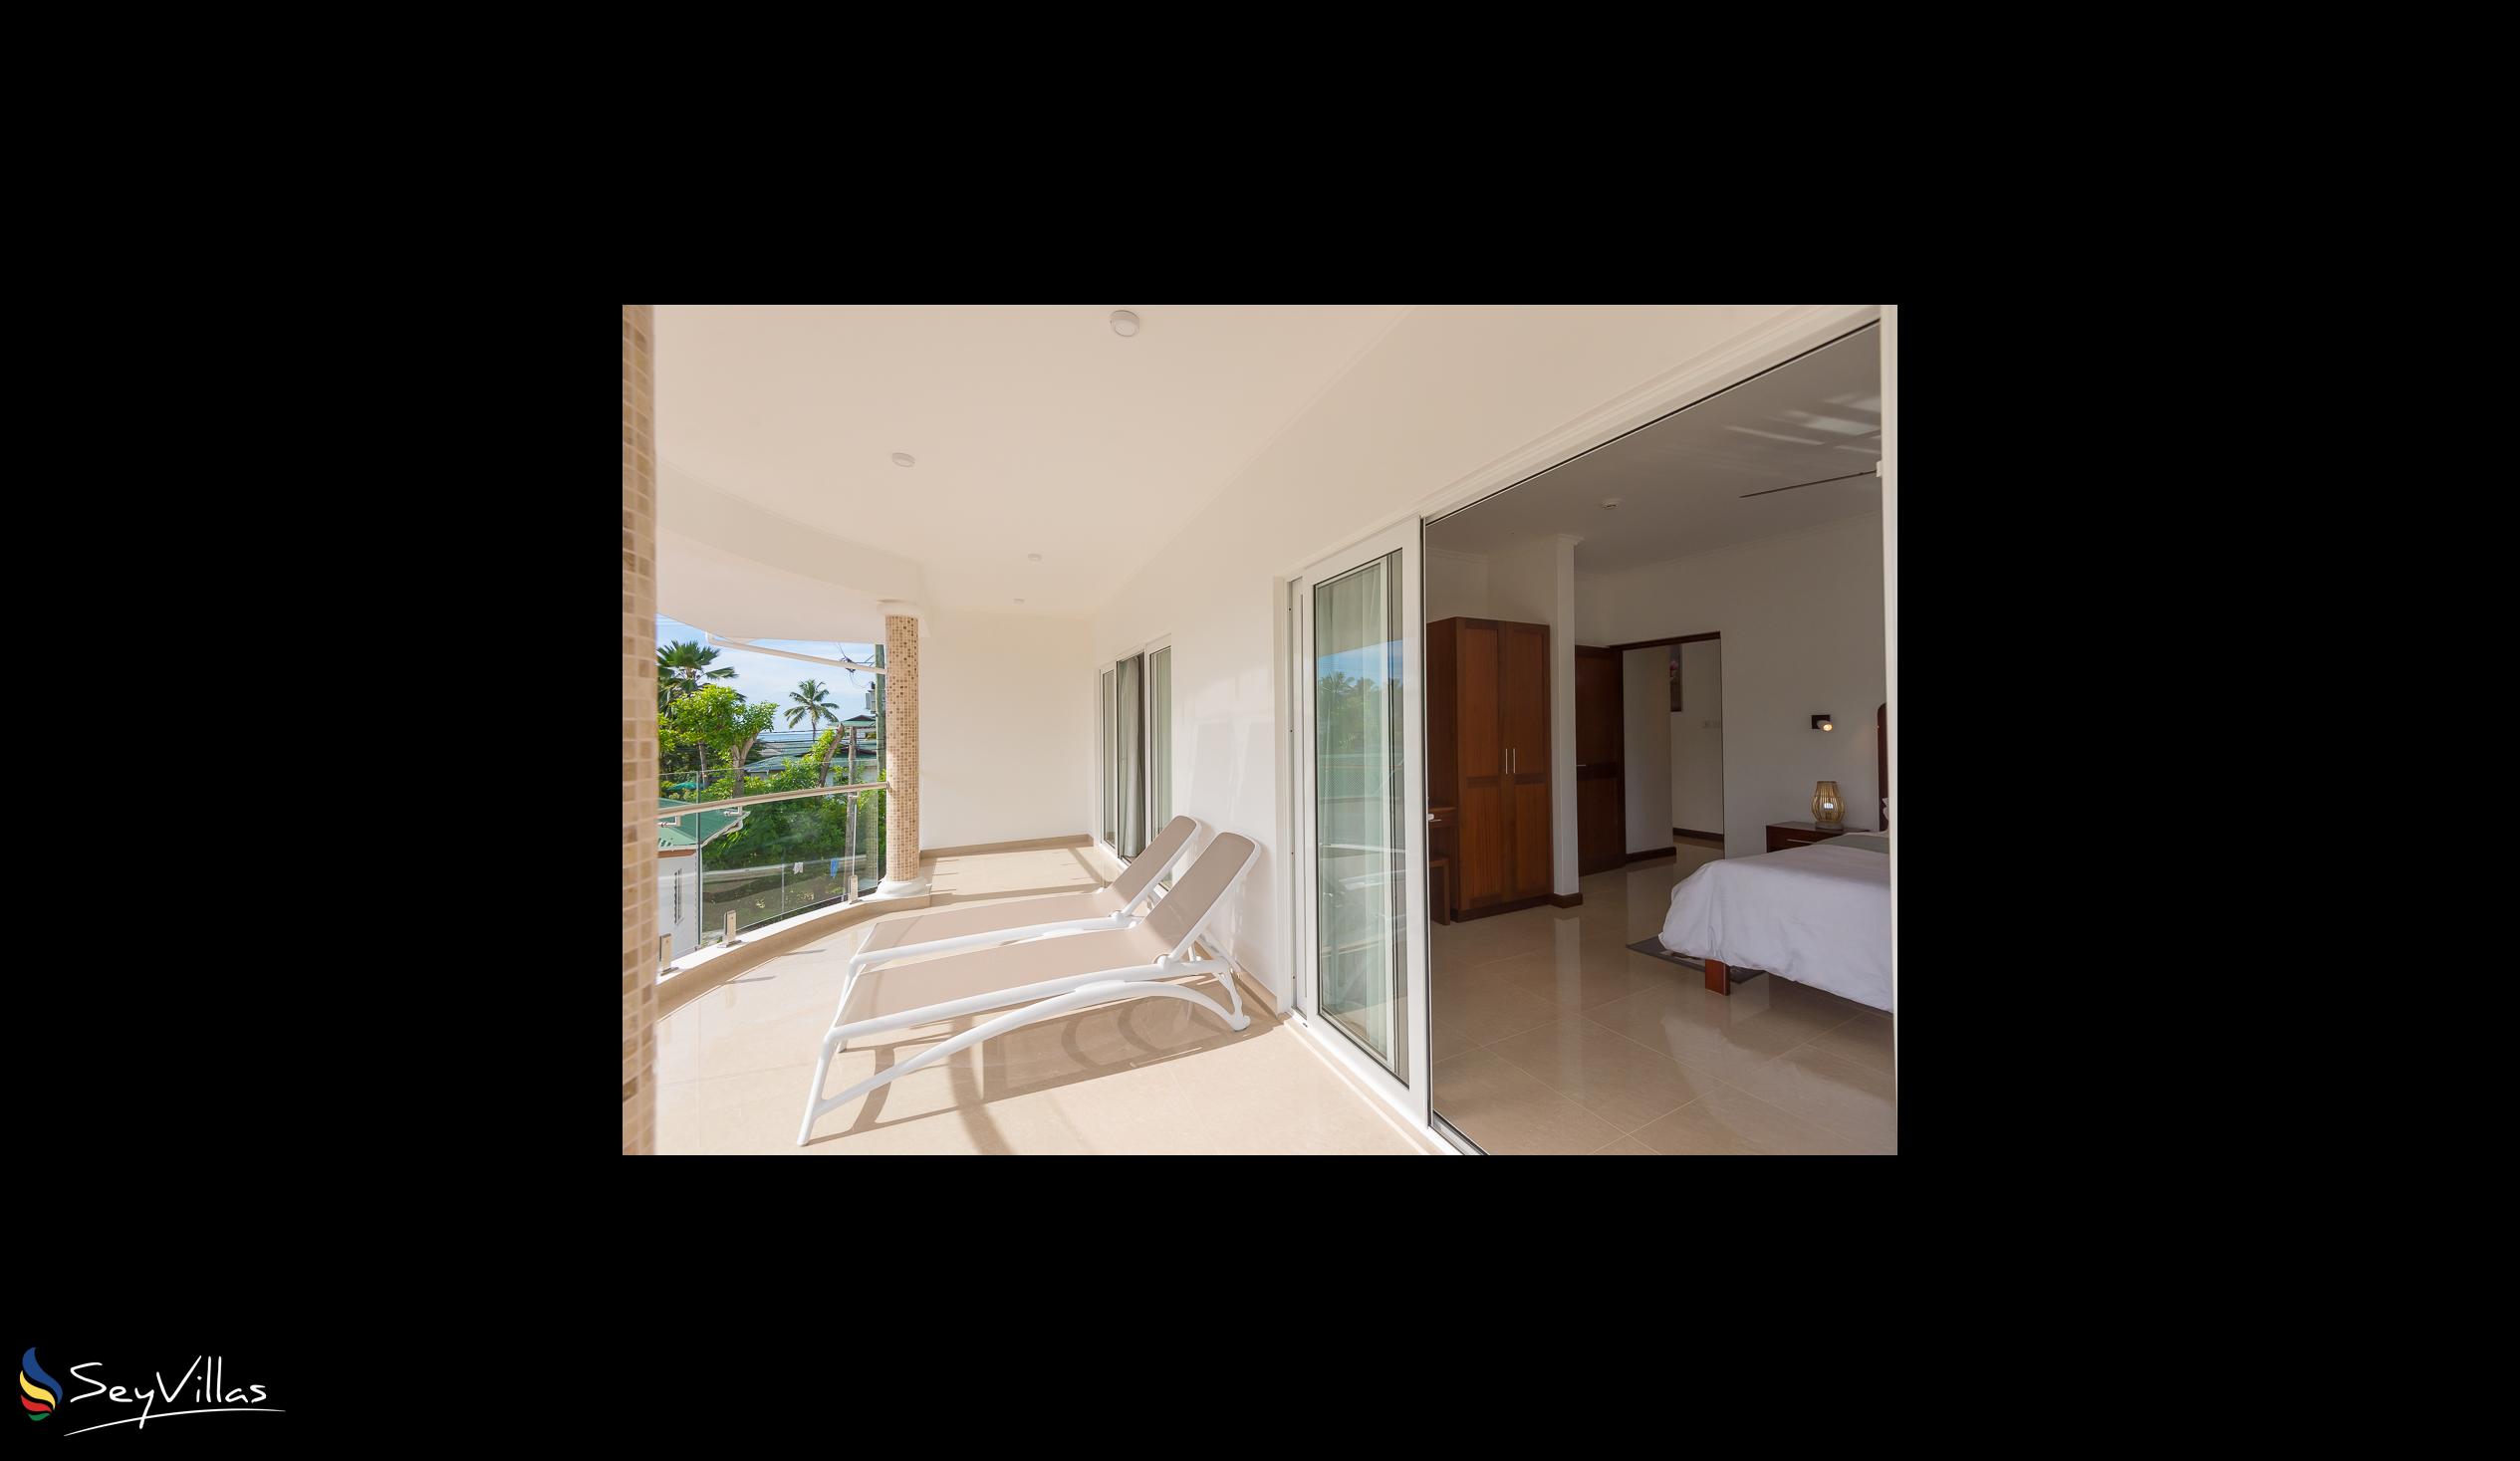 Foto 14: Tropic Villa Annex - Appartement pour adultes - Praslin (Seychelles)